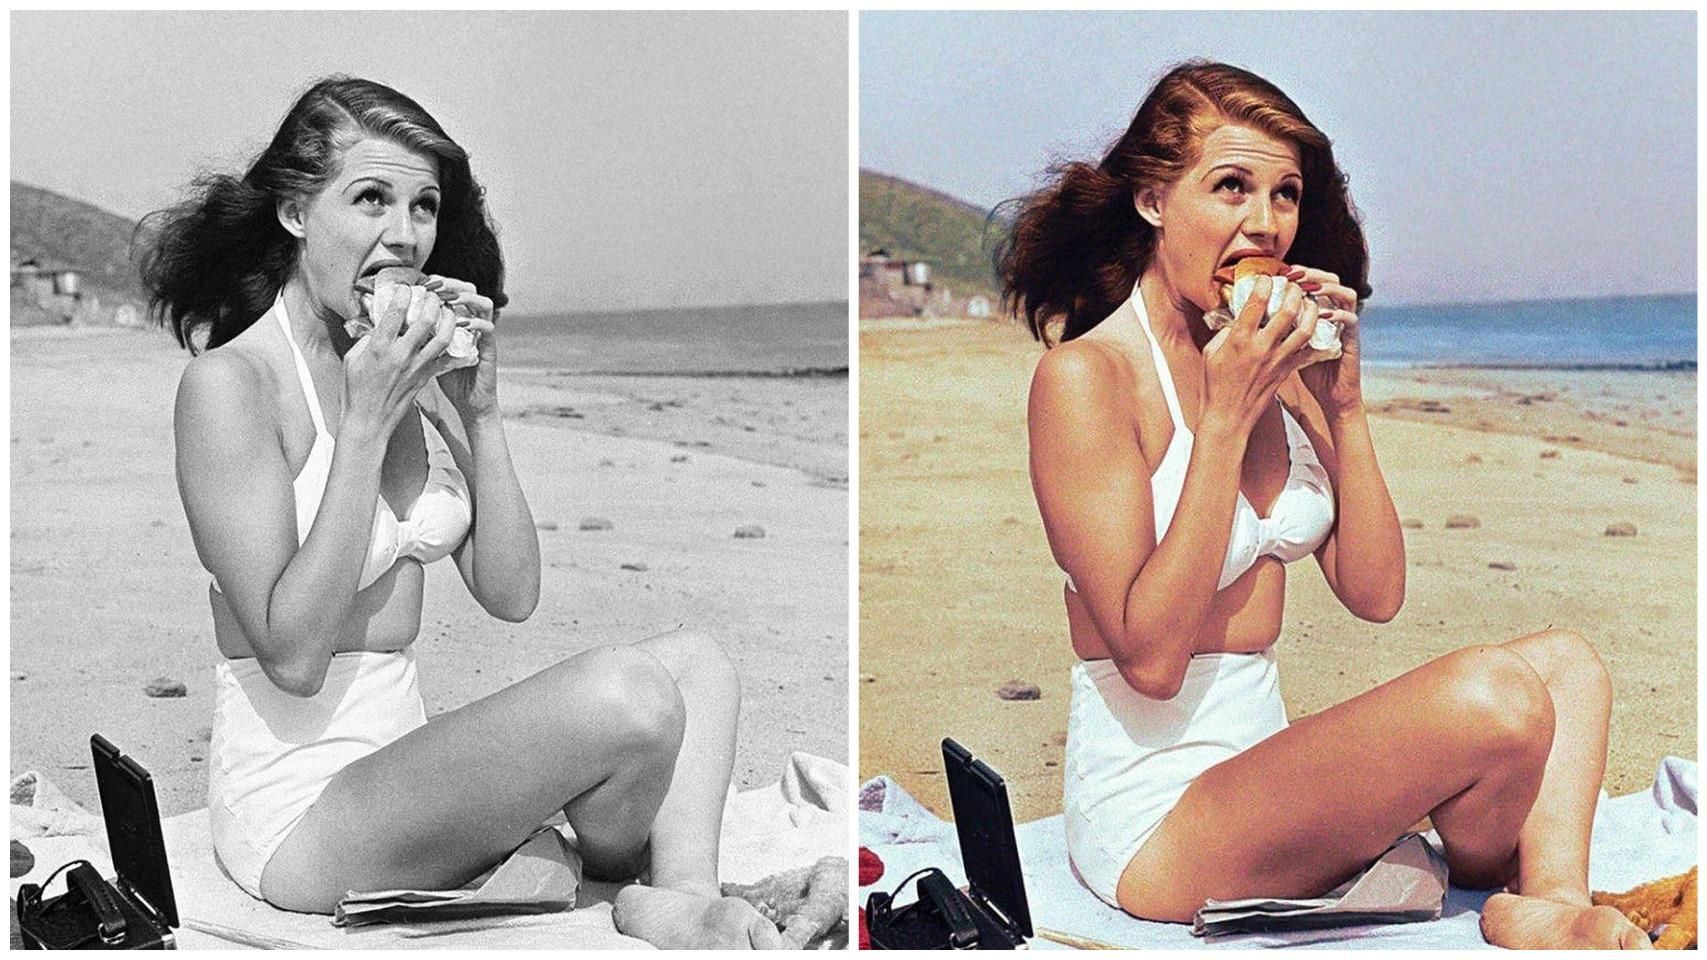 Хейворт, который ест на пляже, 1947